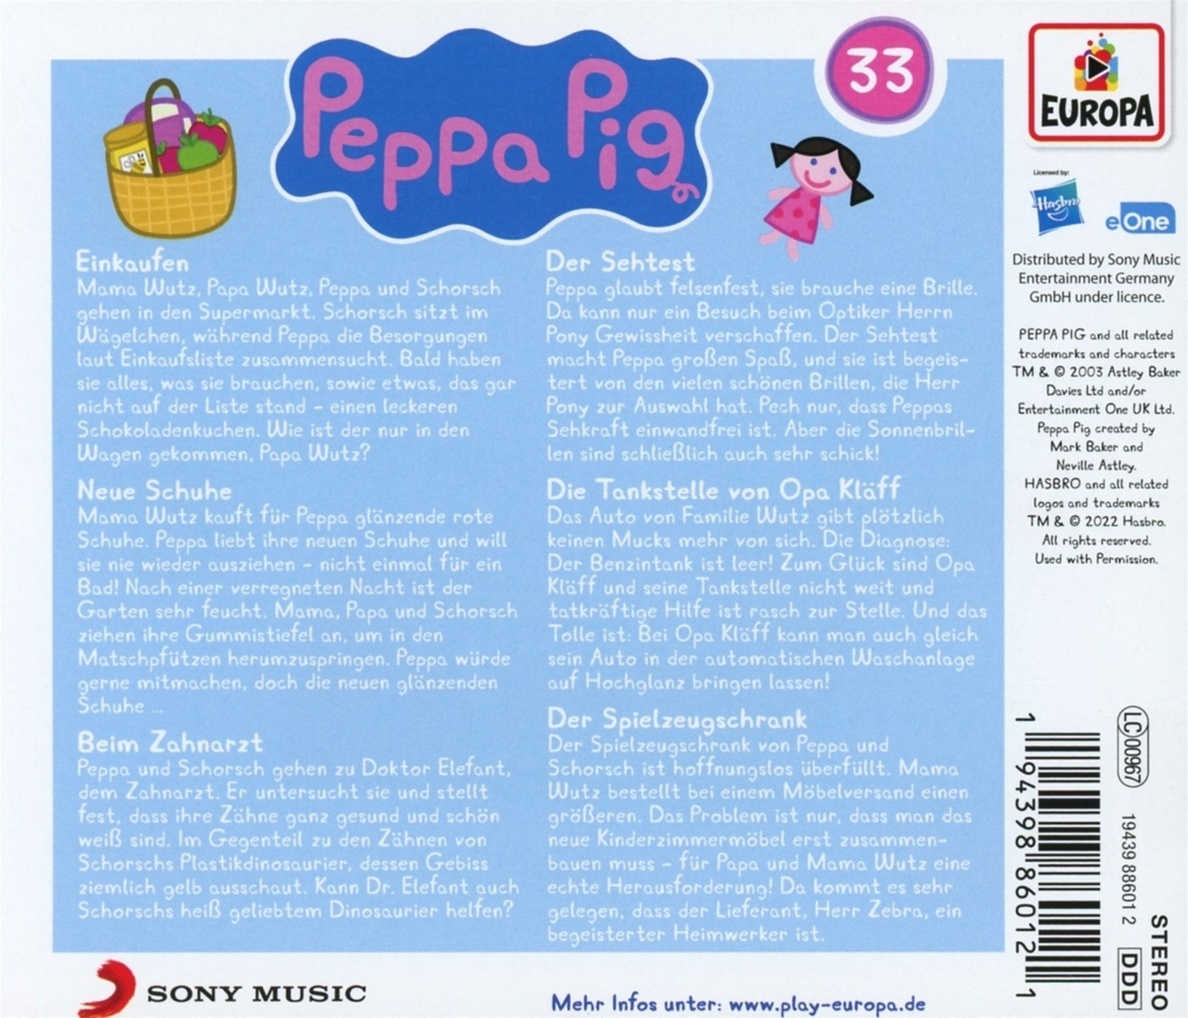 Peppa Pig - Einkaufen und 5 weitere Geschichten Folge 33 Hörbuch jetzt bei   bestellen